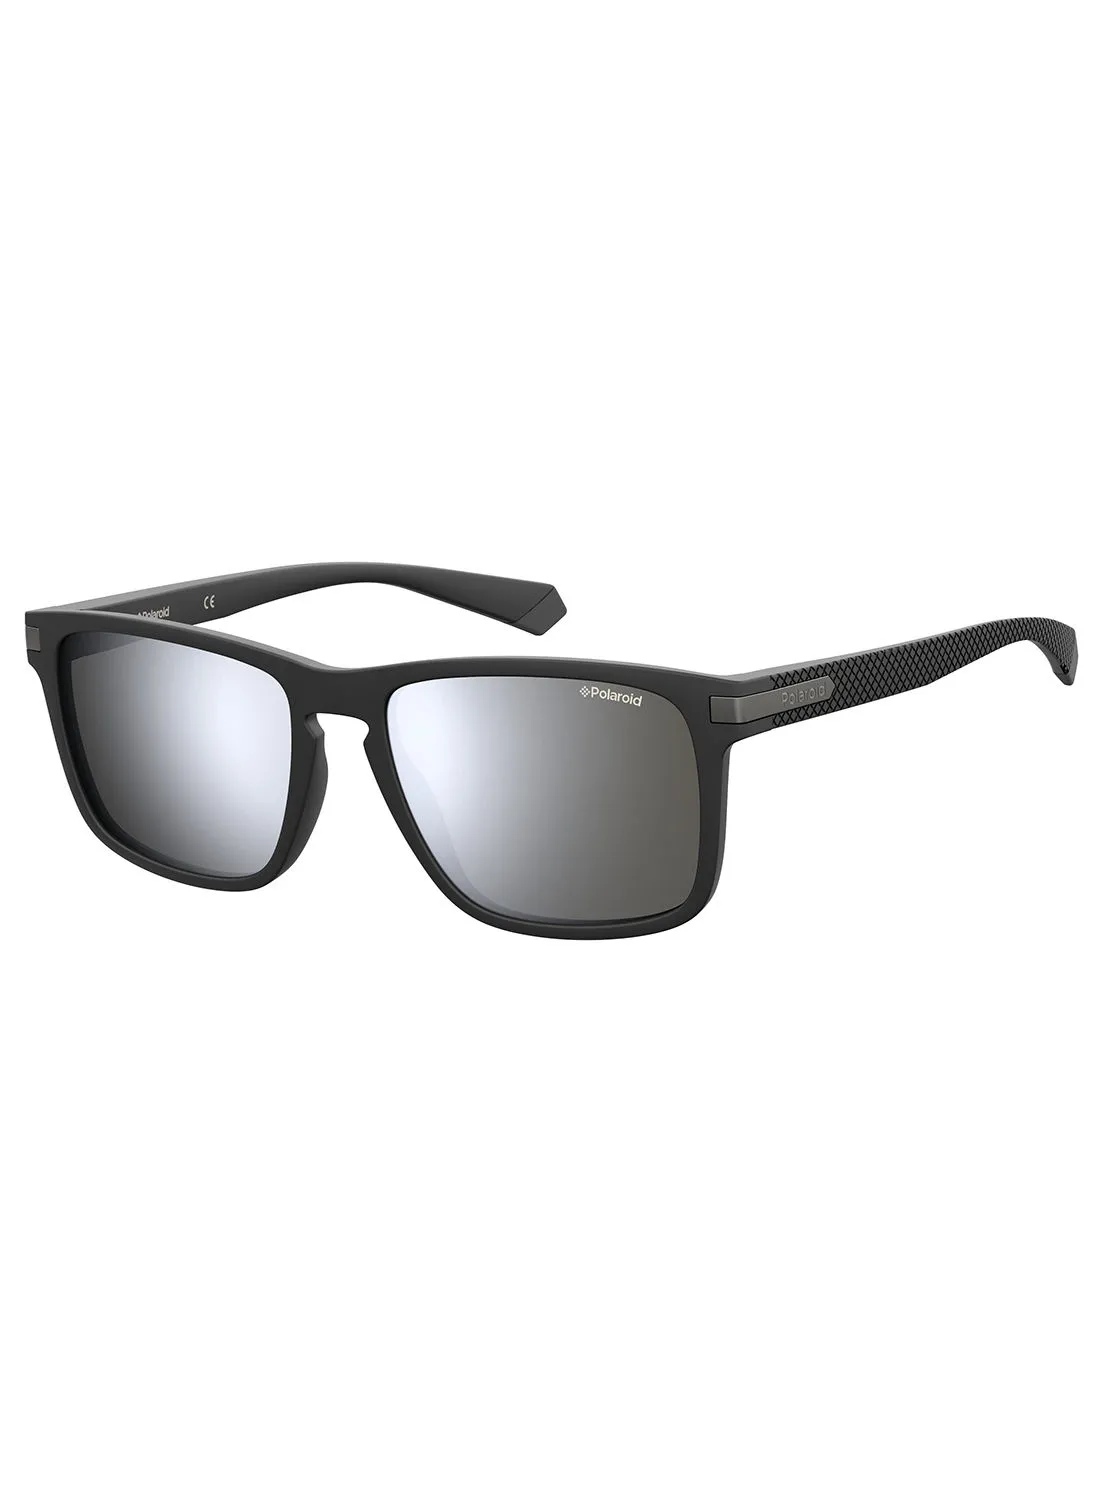 Polaroid Rectangular Sunglasses 202905